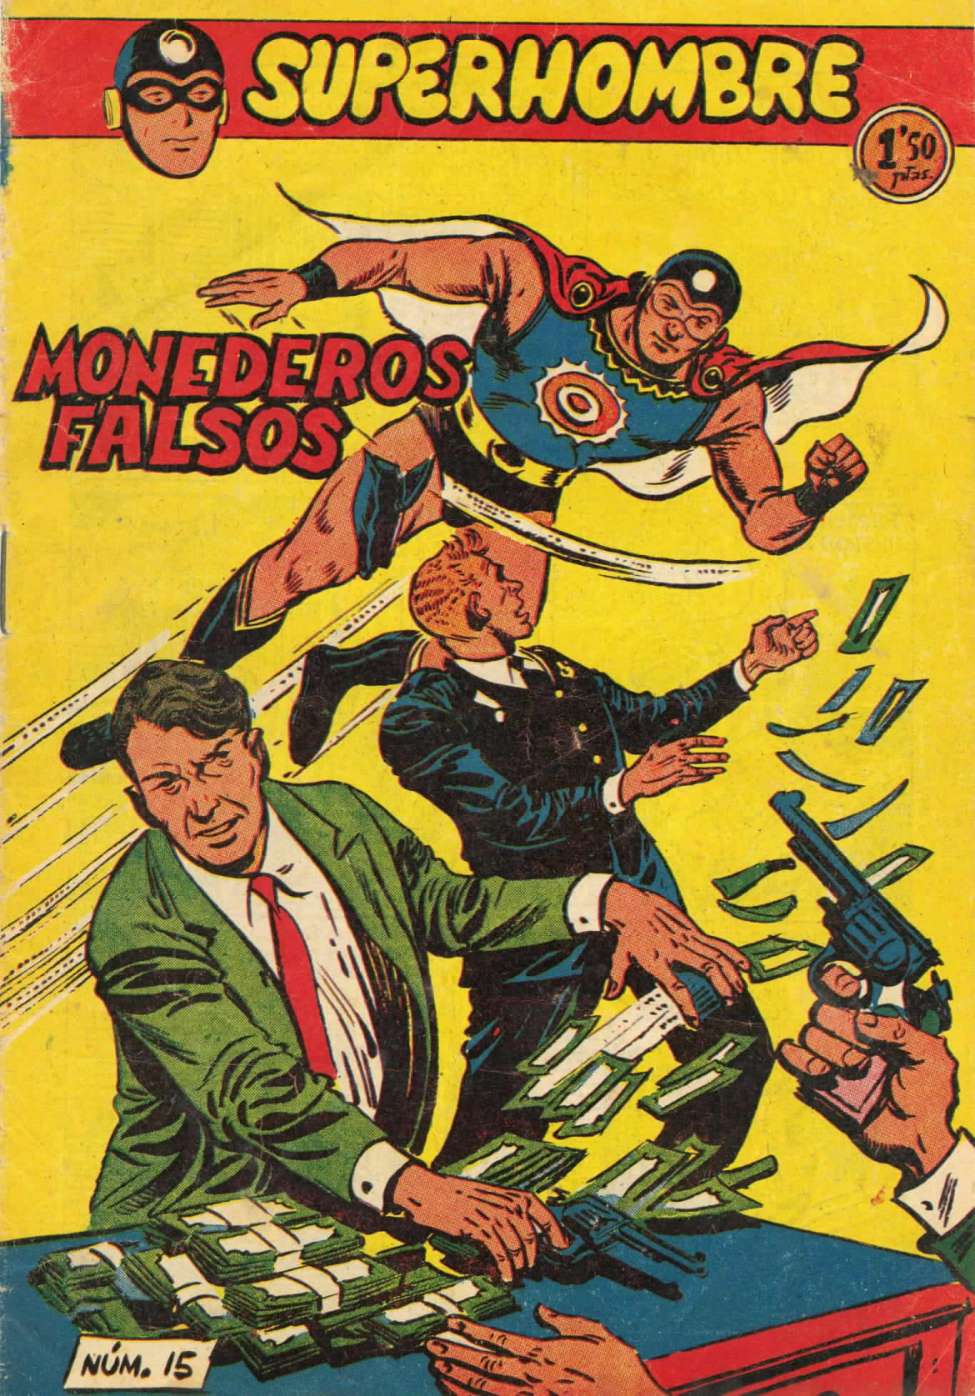 Comic Book Cover For SuperHombre 15 Monederos falsos